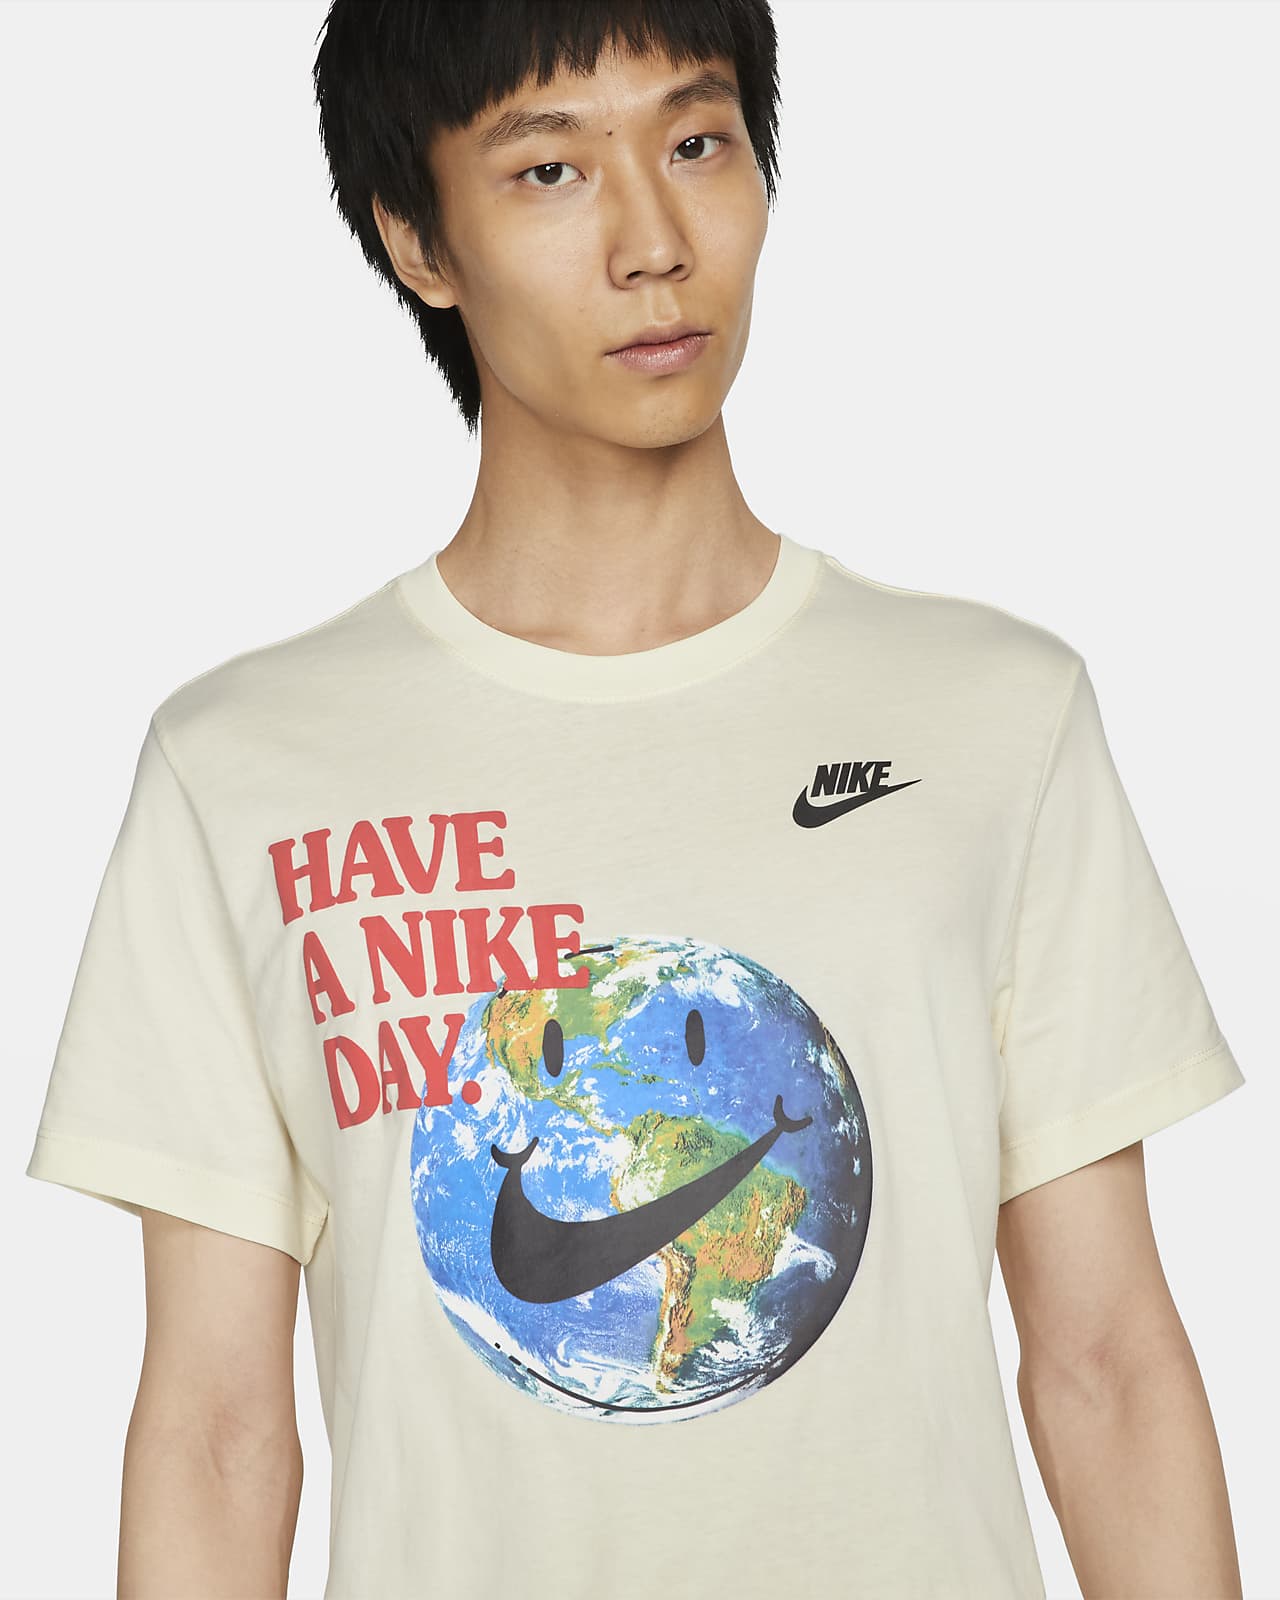 NIKE公式】ナイキ スポーツウェア メンズ Tシャツ.オンラインストア ...